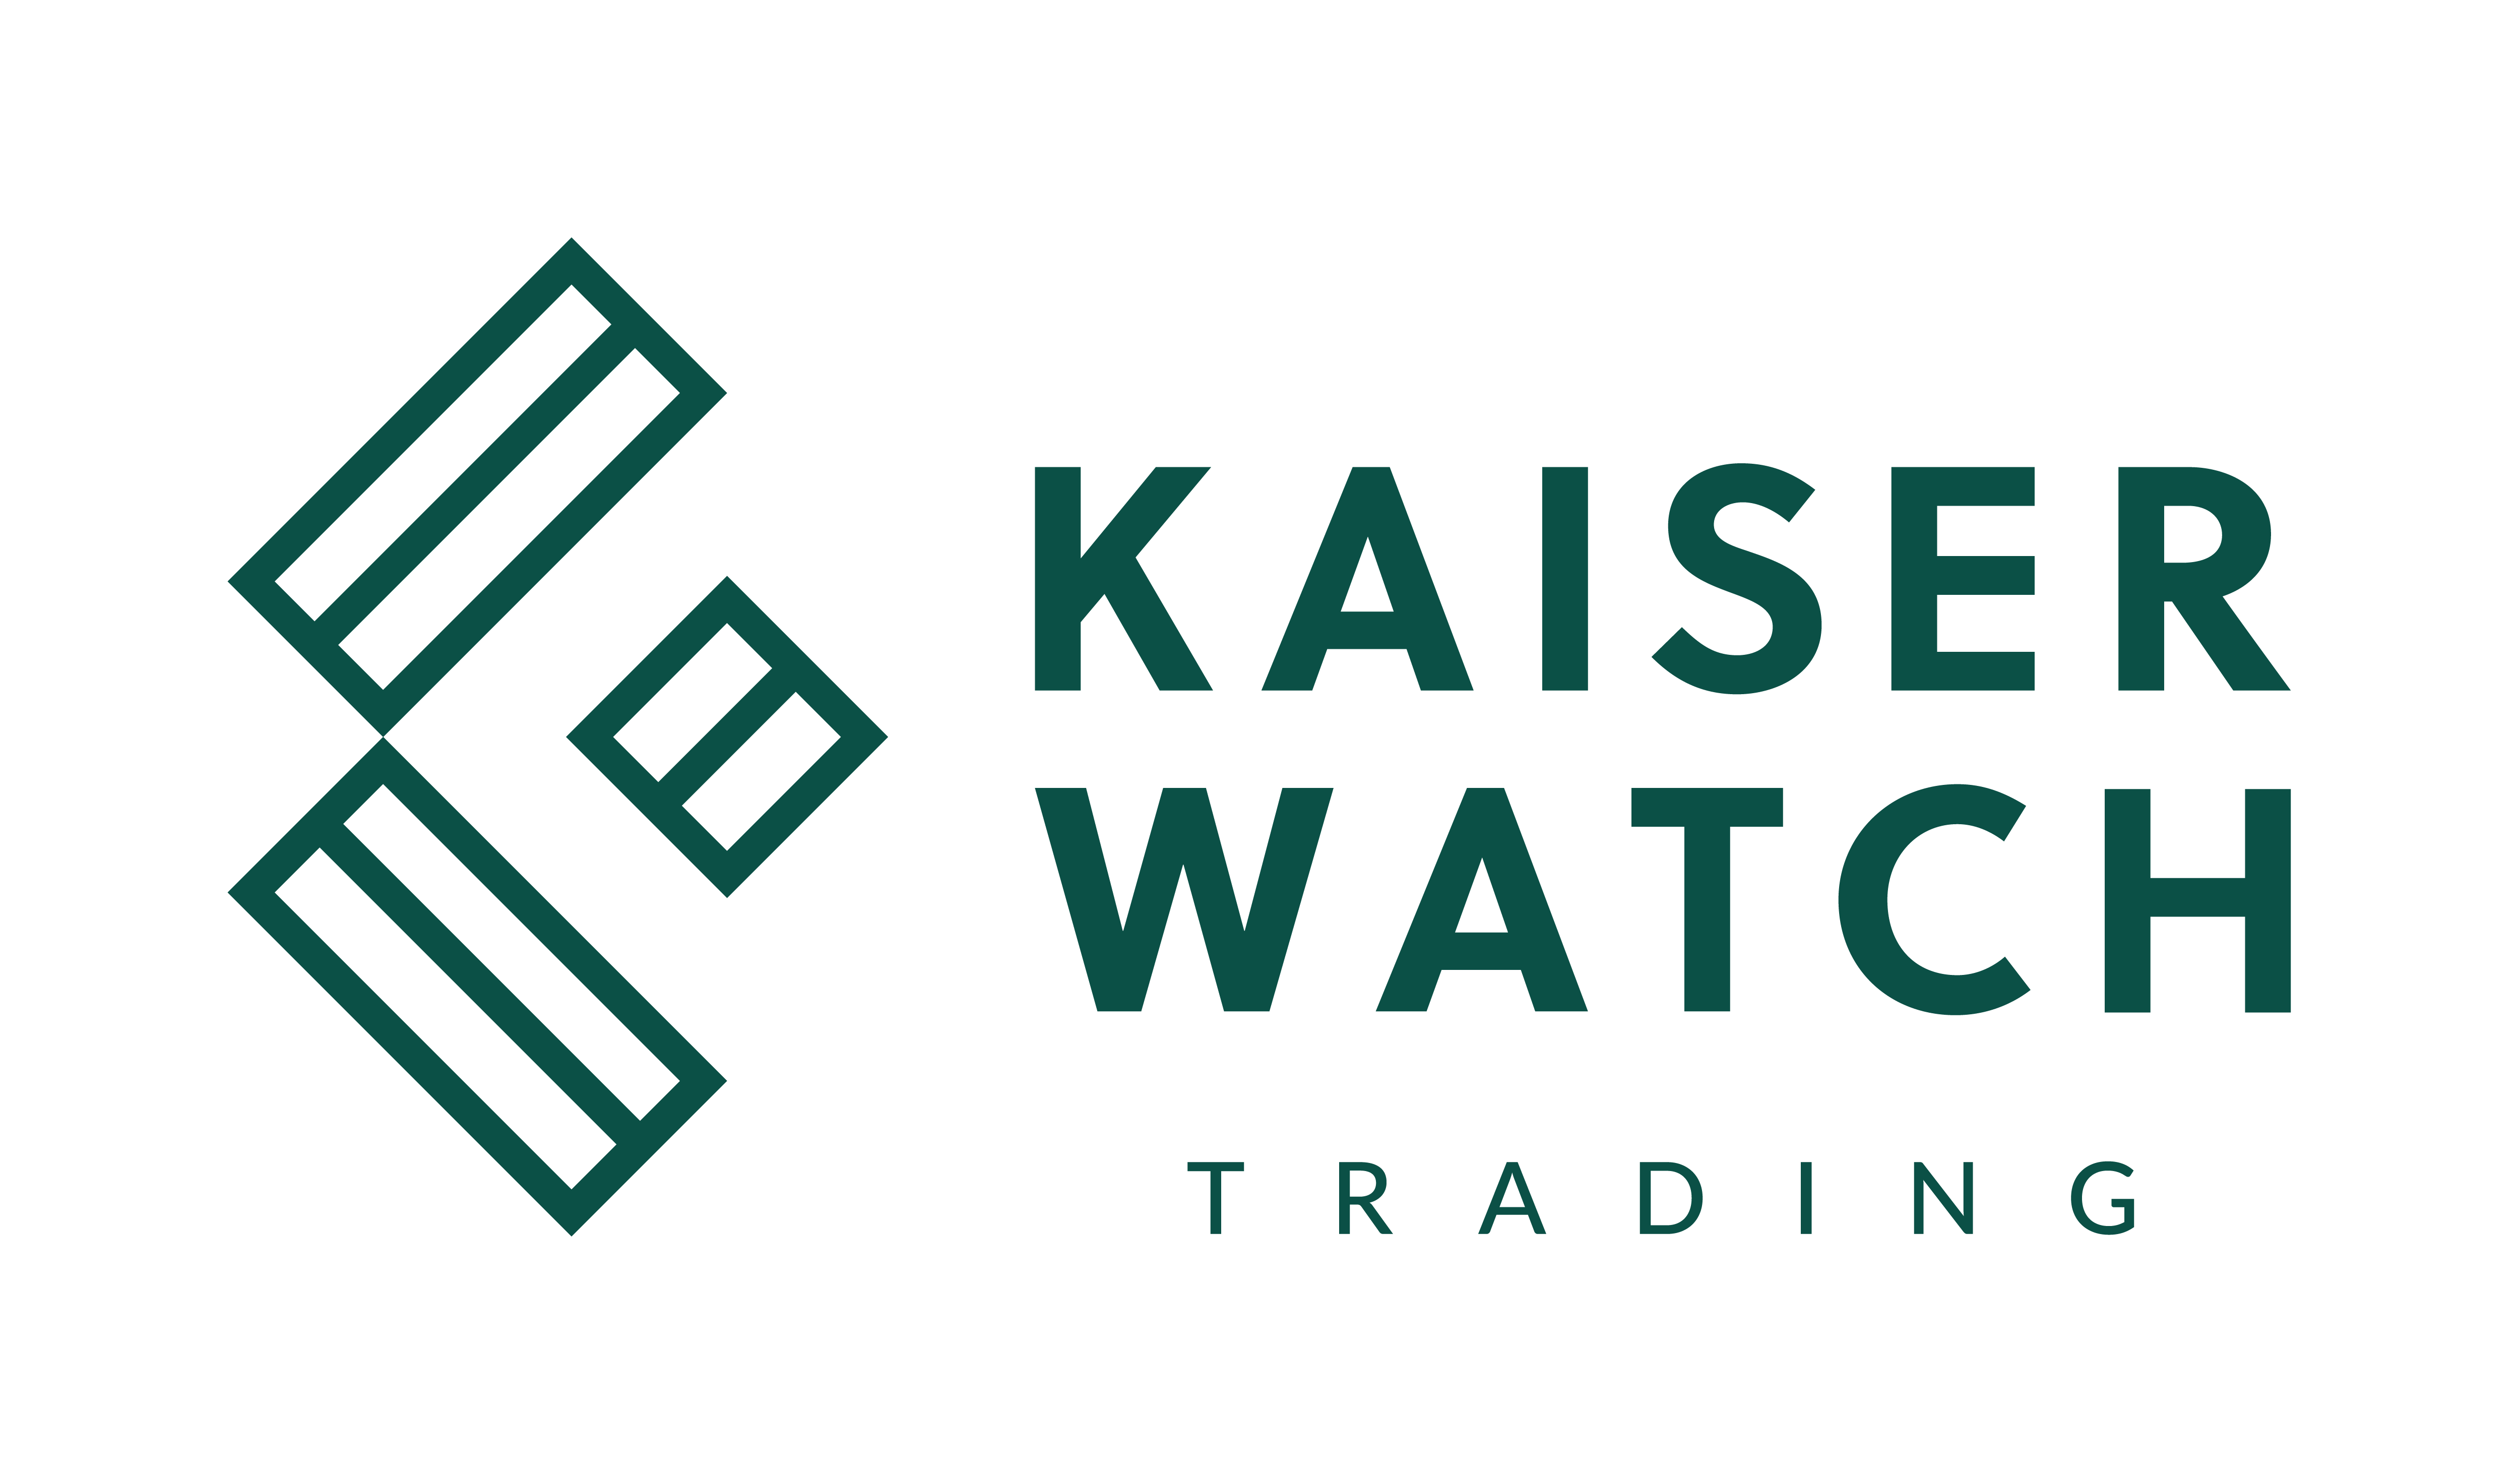 Kaiser Watch Trading